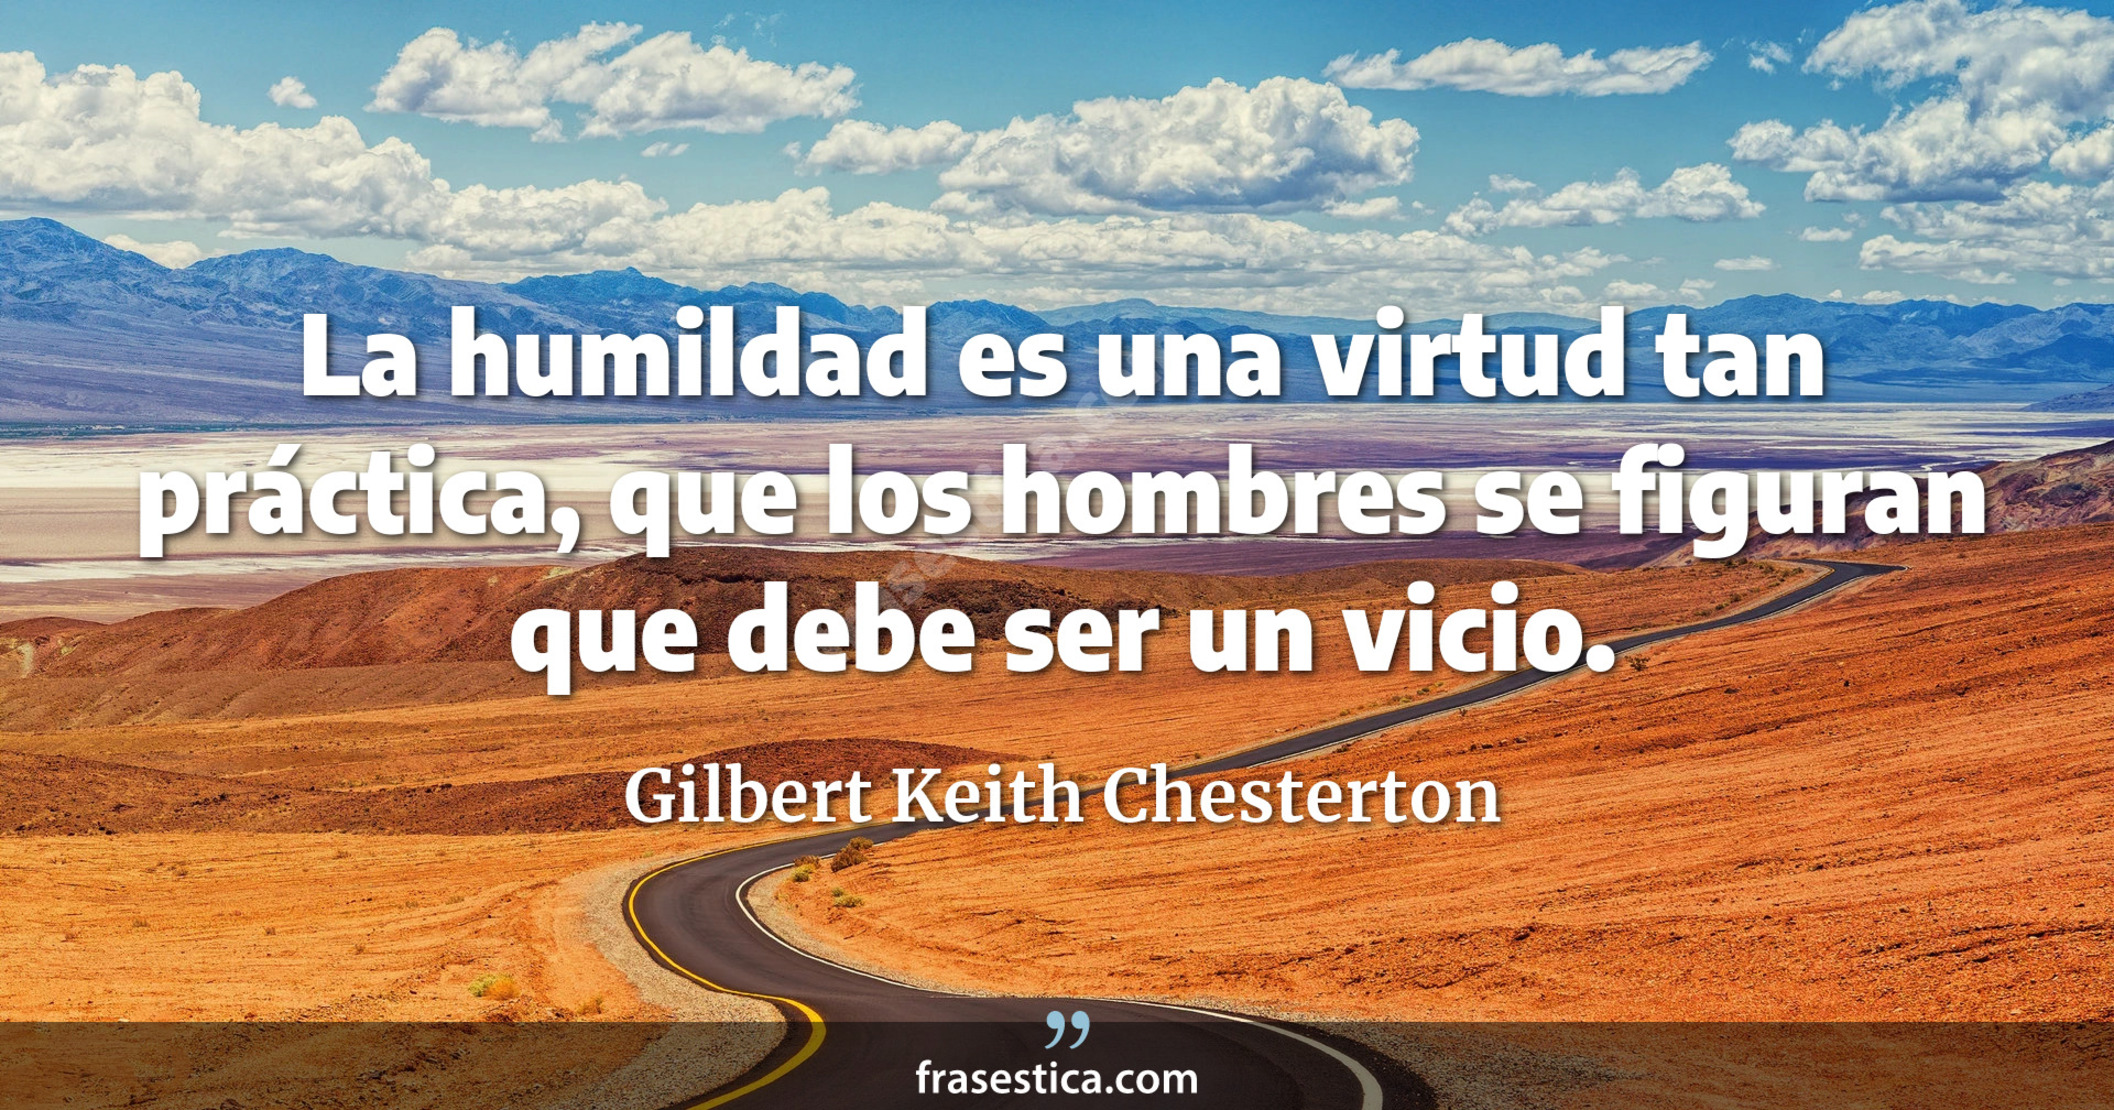 La humildad es una virtud tan práctica, que los hombres se figuran que debe ser un vicio. - Gilbert Keith Chesterton